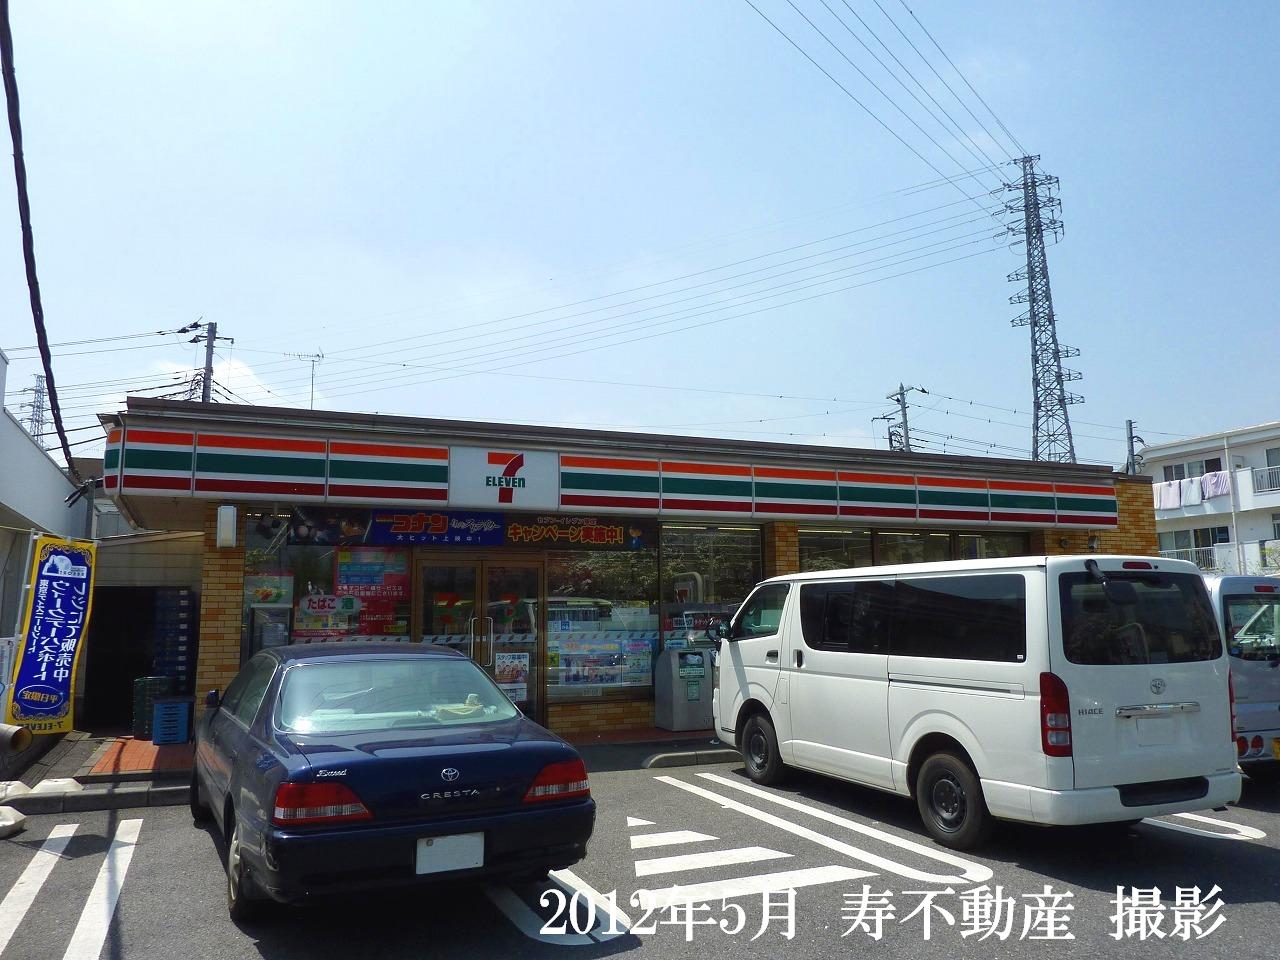 Convenience store. Seven-Eleven Okegawa Izumi 1-chome to (convenience store) 719m